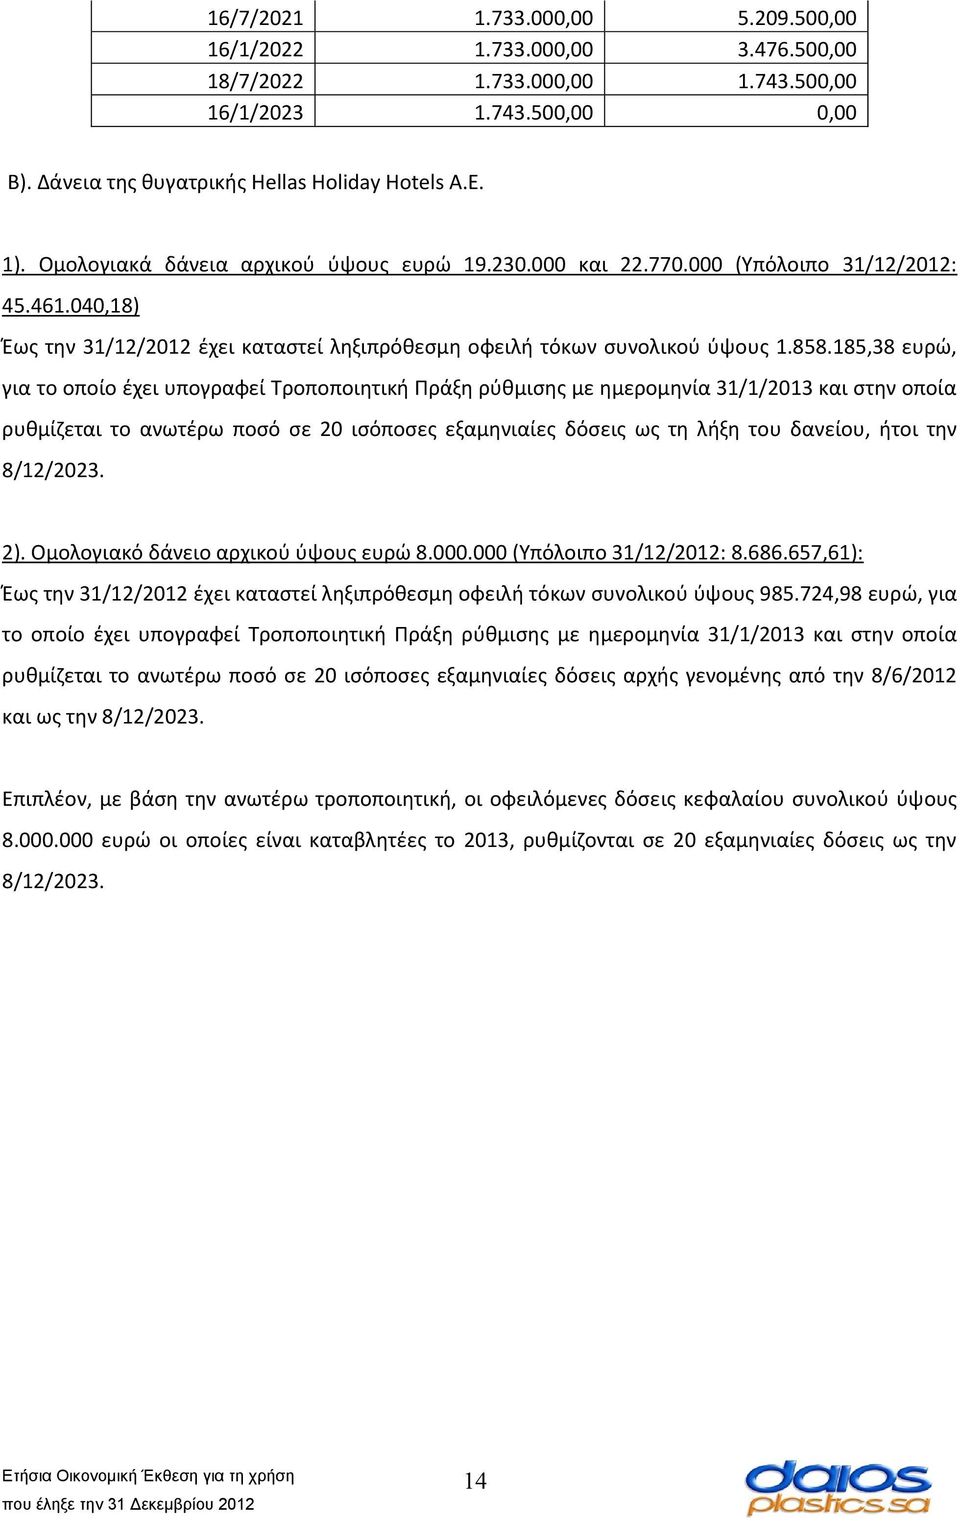 185,38 ευρώ, για το οποίο έχει υπογραφεί Τροποποιητική Πράξη ρύθμισης με ημερομηνία 31/1/2013 και στην οποία ρυθμίζεται το ανωτέρω ποσό σε 20 ισόποσες εξαμηνιαίες δόσεις ως τη λήξη του δανείου, ήτοι